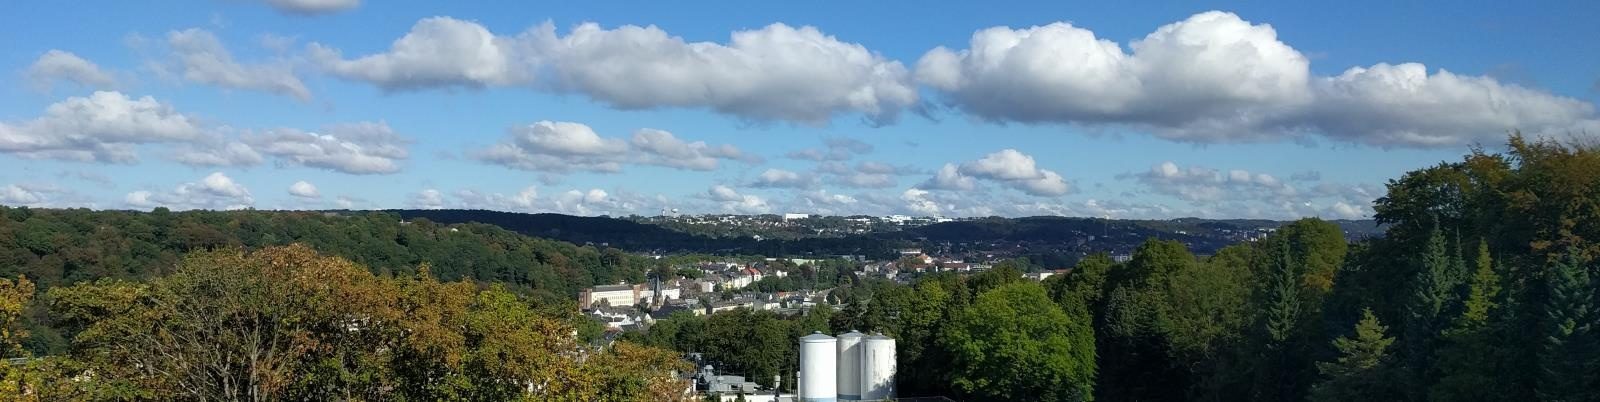 Luftaufnahme der Produktionsstätte in Wuppertal, Deutschland